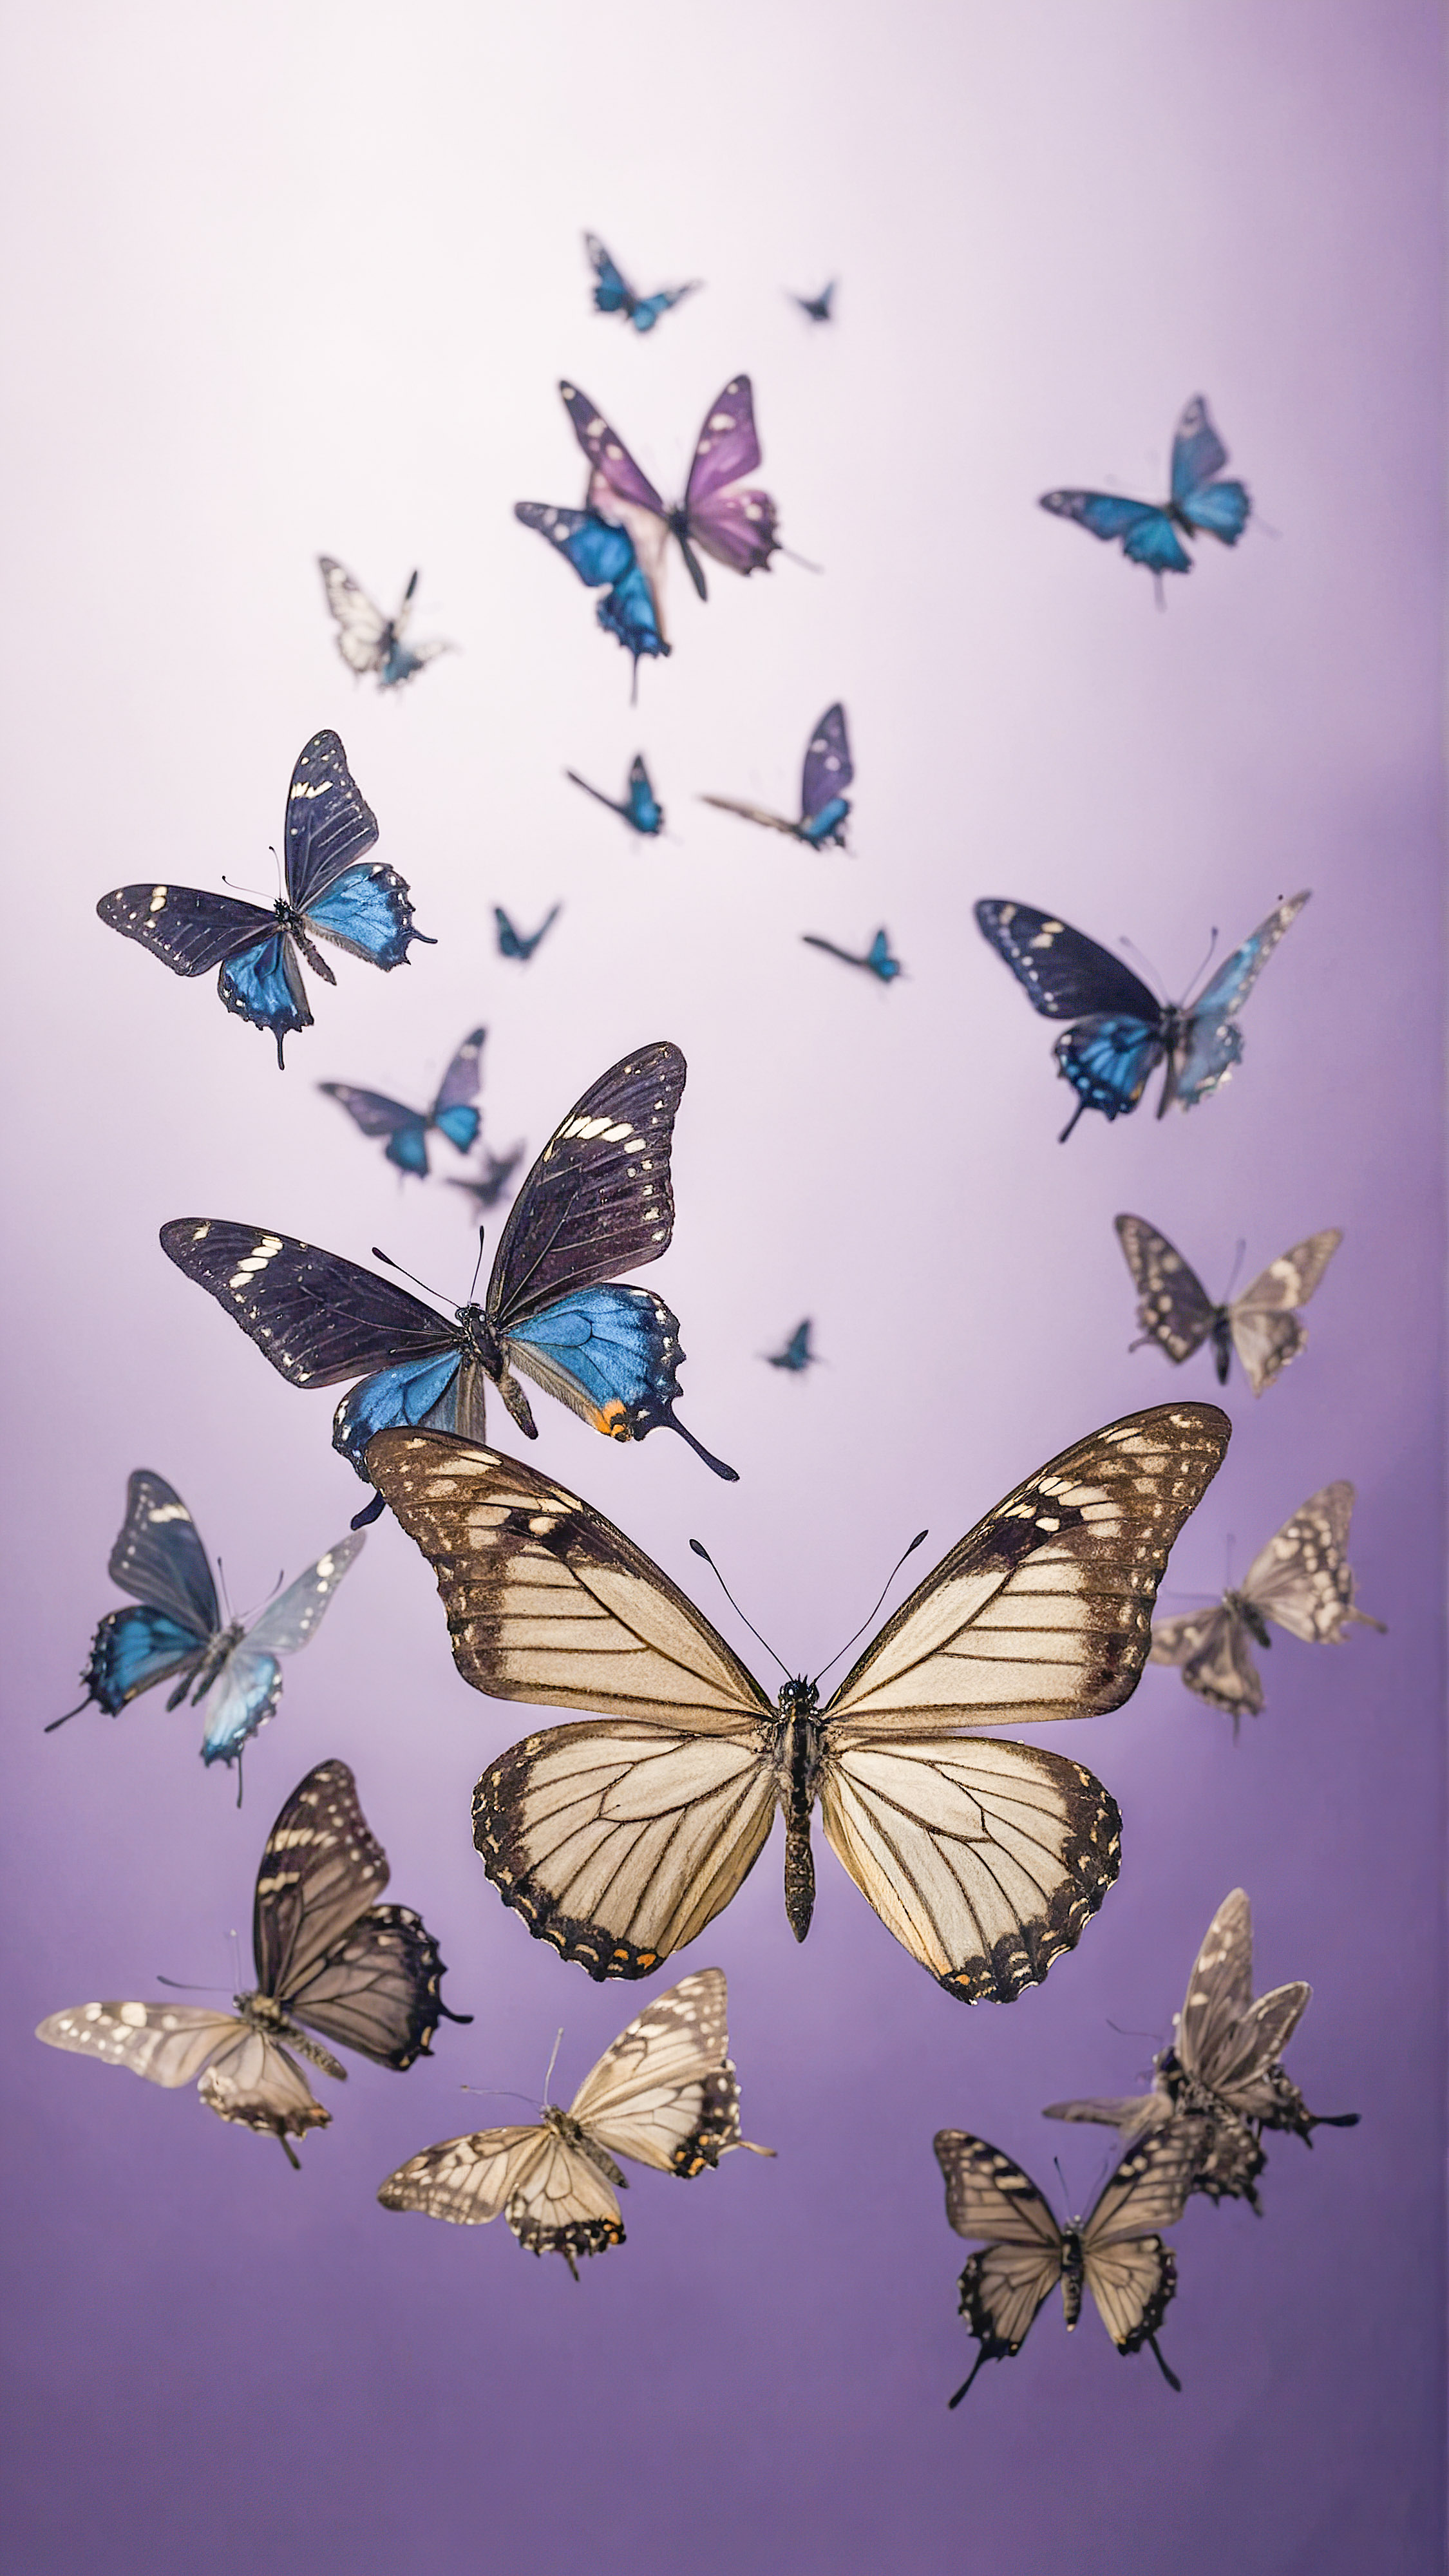 Vivez le calme apaisant avec nos arrière-plans esthétiques mignons pour iPhone, présentant de petits papillons noirs volant contre un fond violet doux.